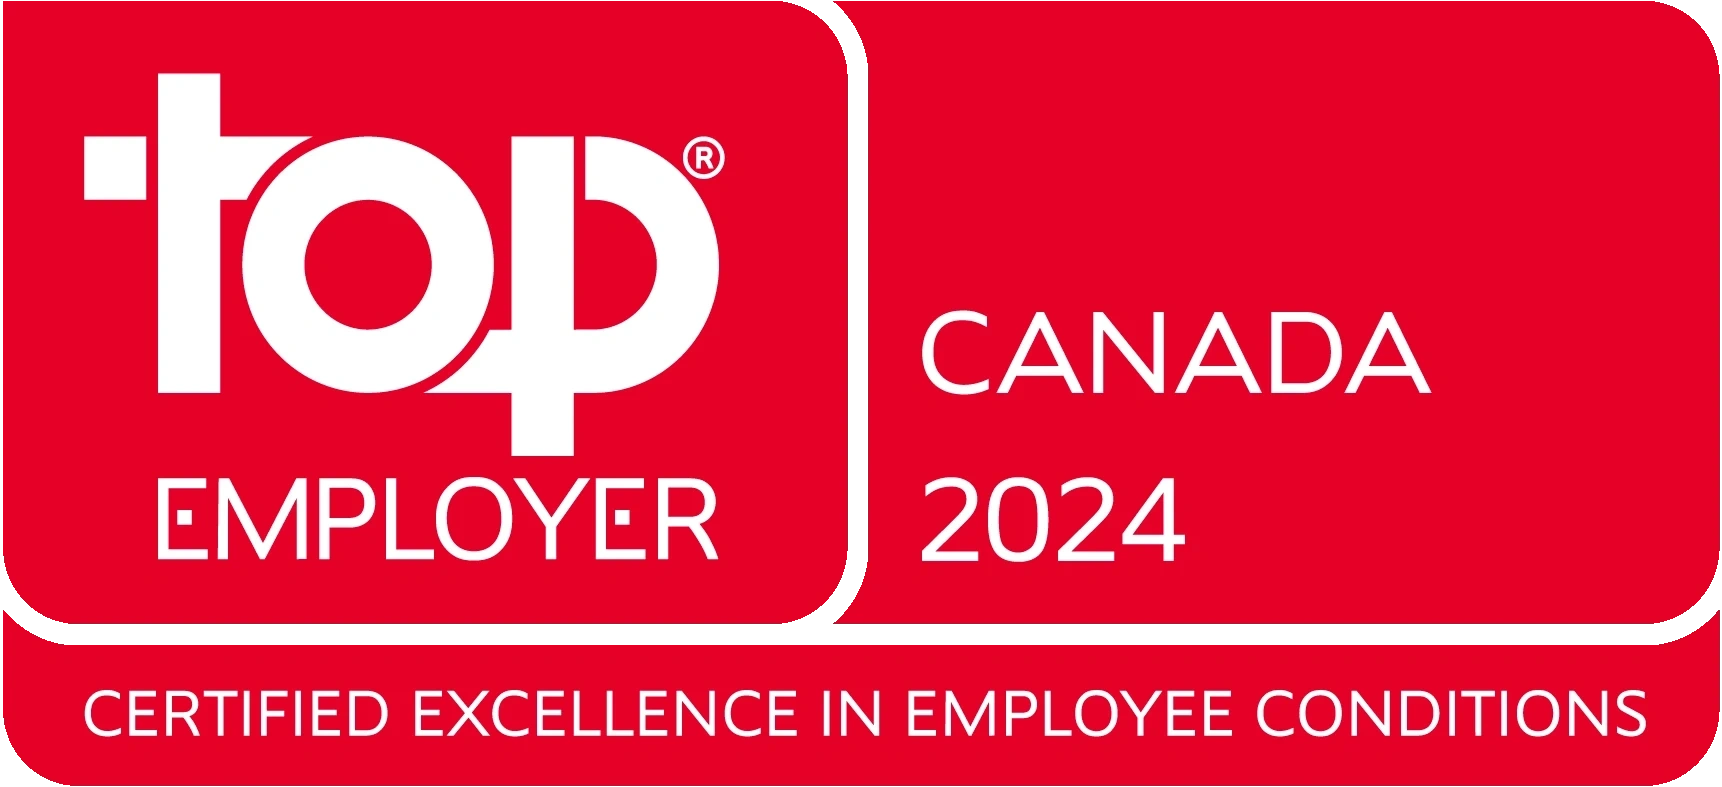 Canada employer